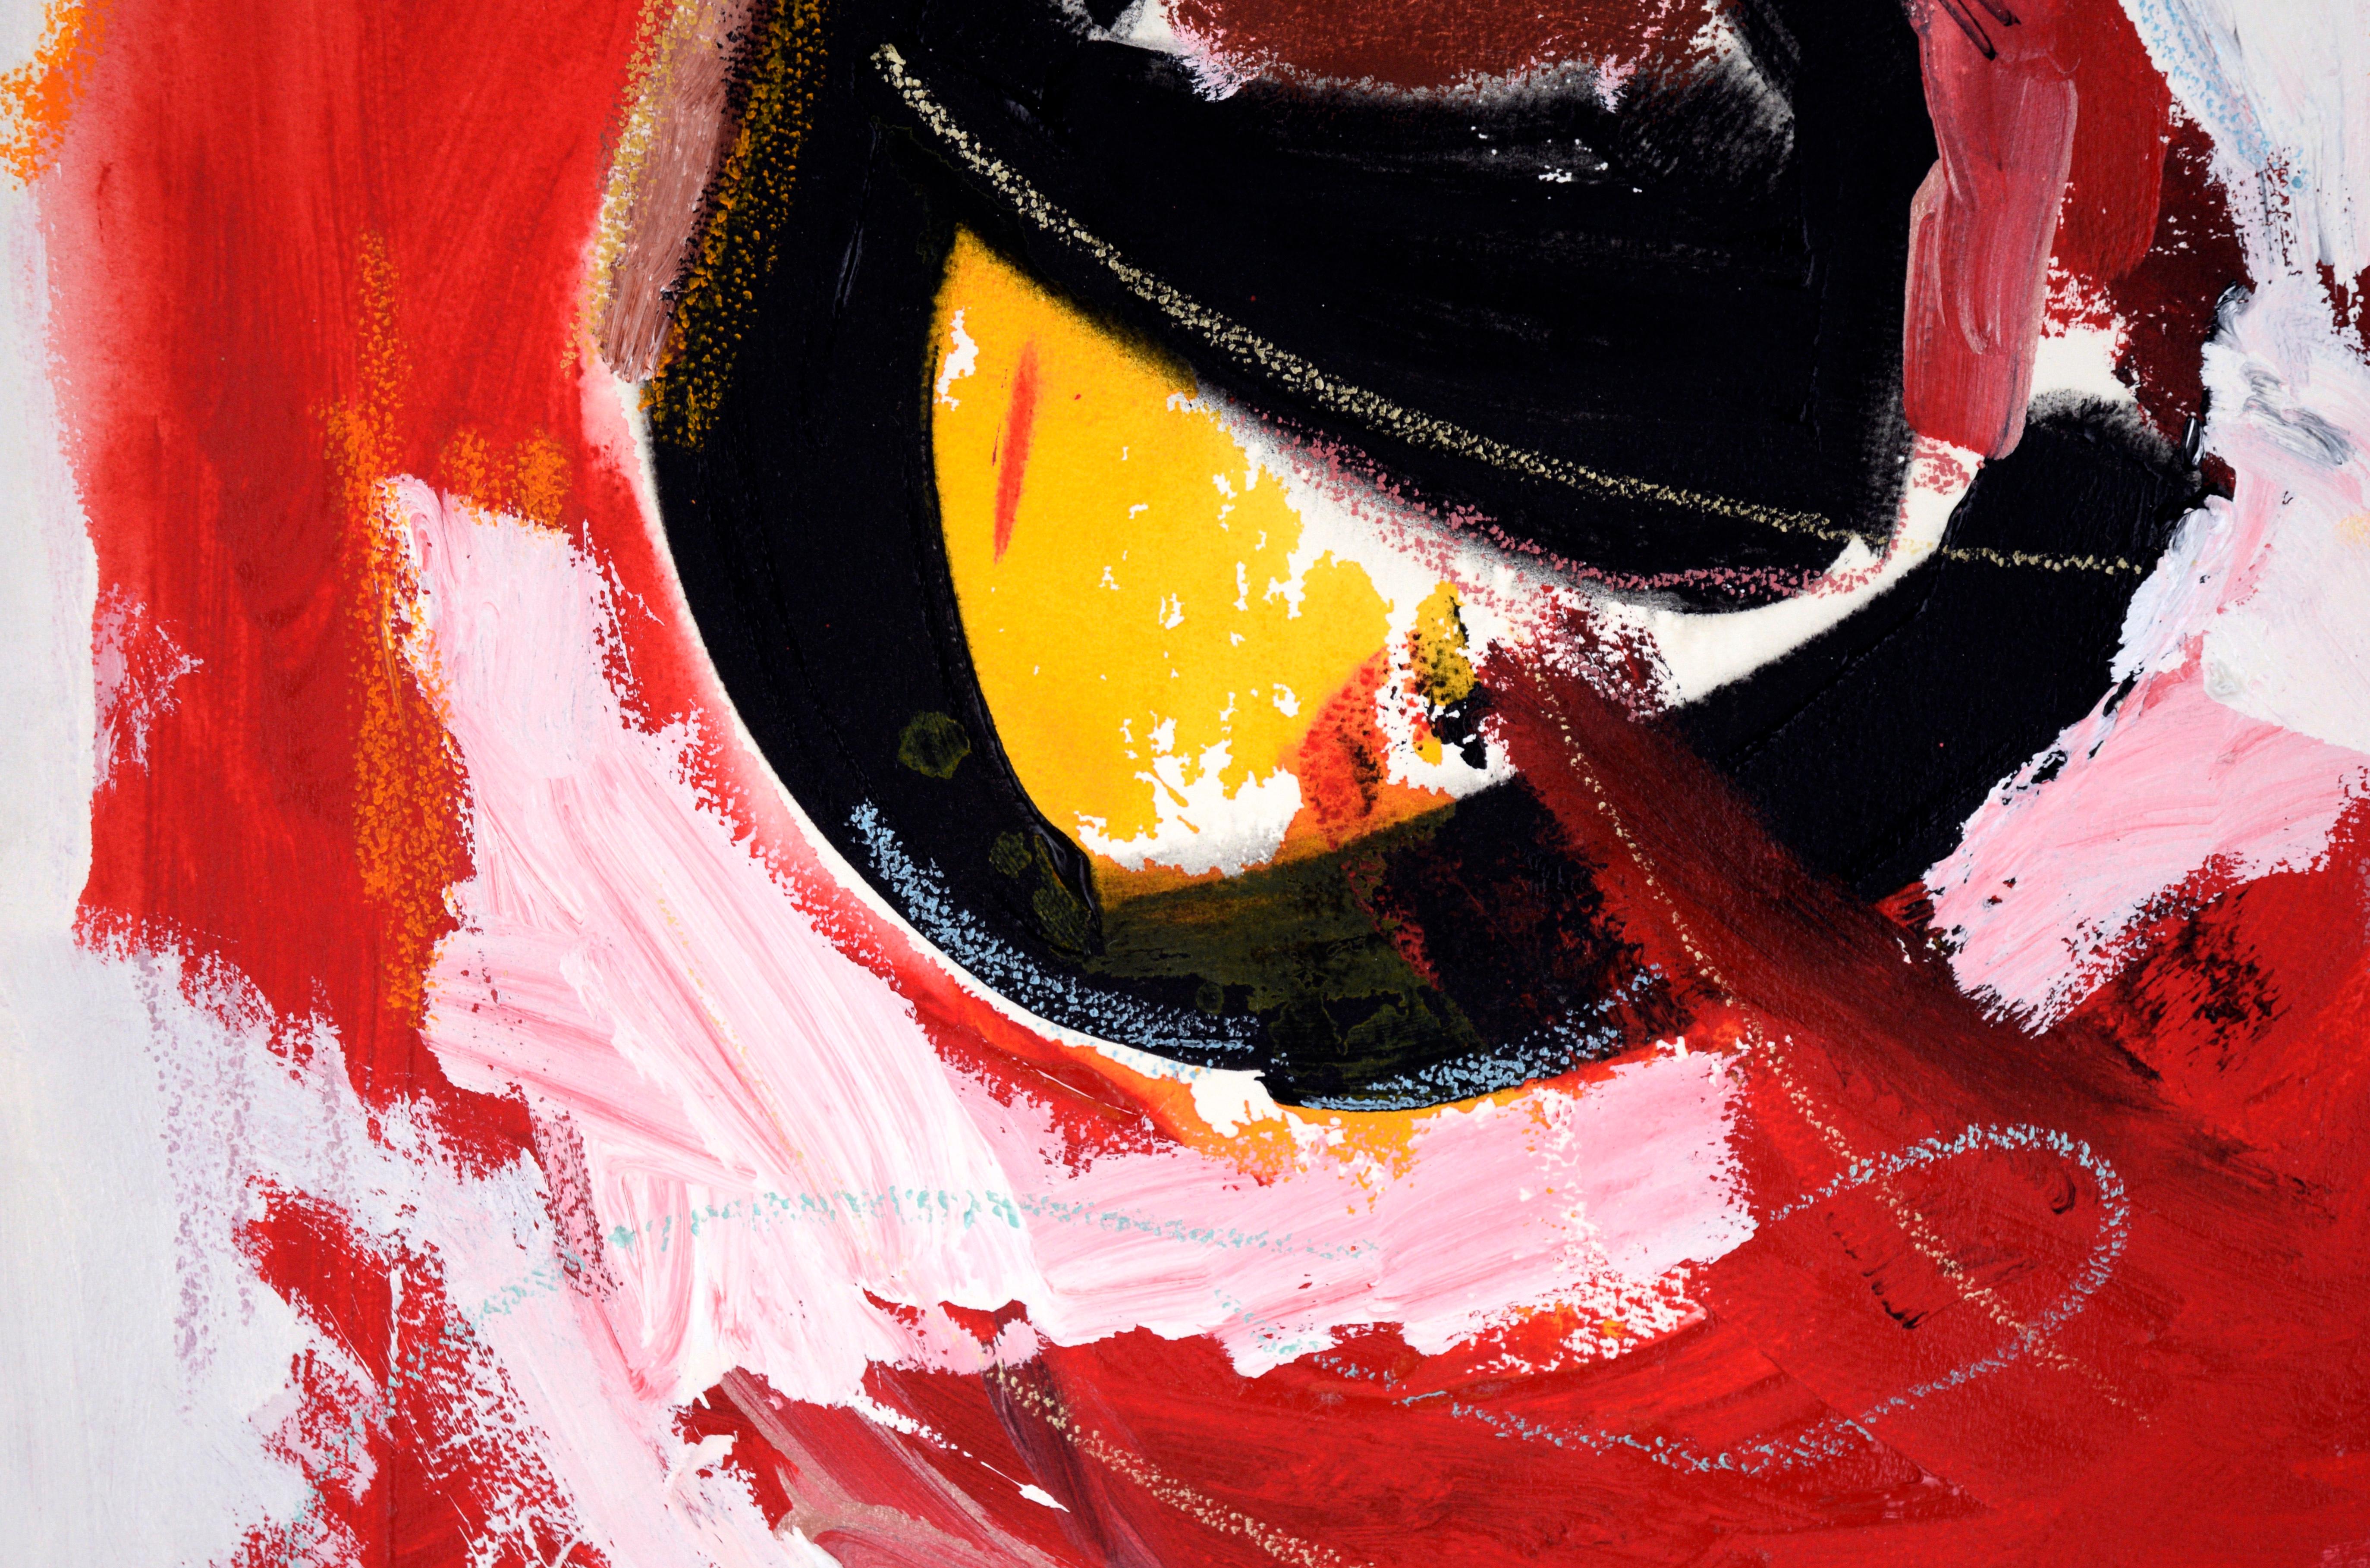 Schwarze Sonne im roten und weißen Himmel – Acryl auf Papier

Kühnes abstraktes Werk von Ricardo de Silva (Amerikaner/Brasilien, 20. Jahrhundert). Eine große schwarz-gelbe Kugel befindet sich in einem wirbelnden weiß-gelben Himmel. Es gibt Akzente